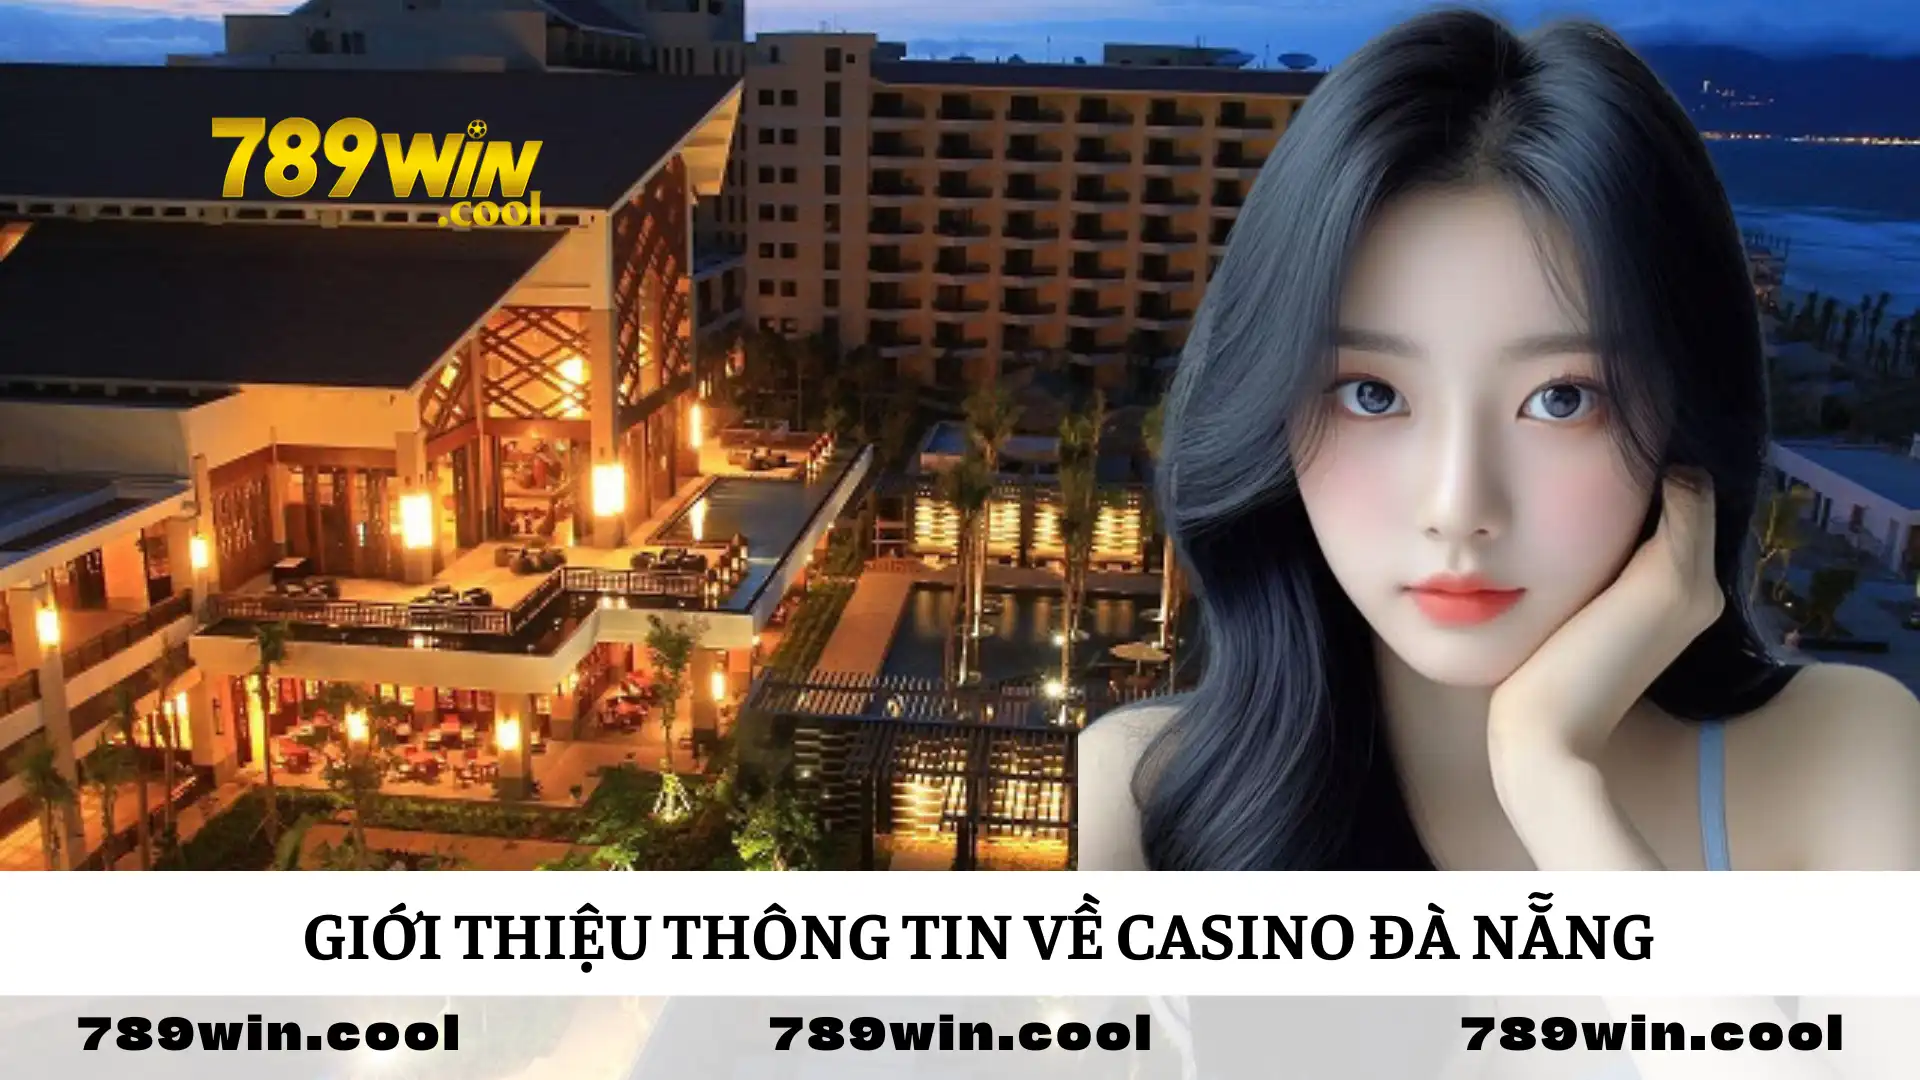 Giới thiệu về casino Đà Nẵng